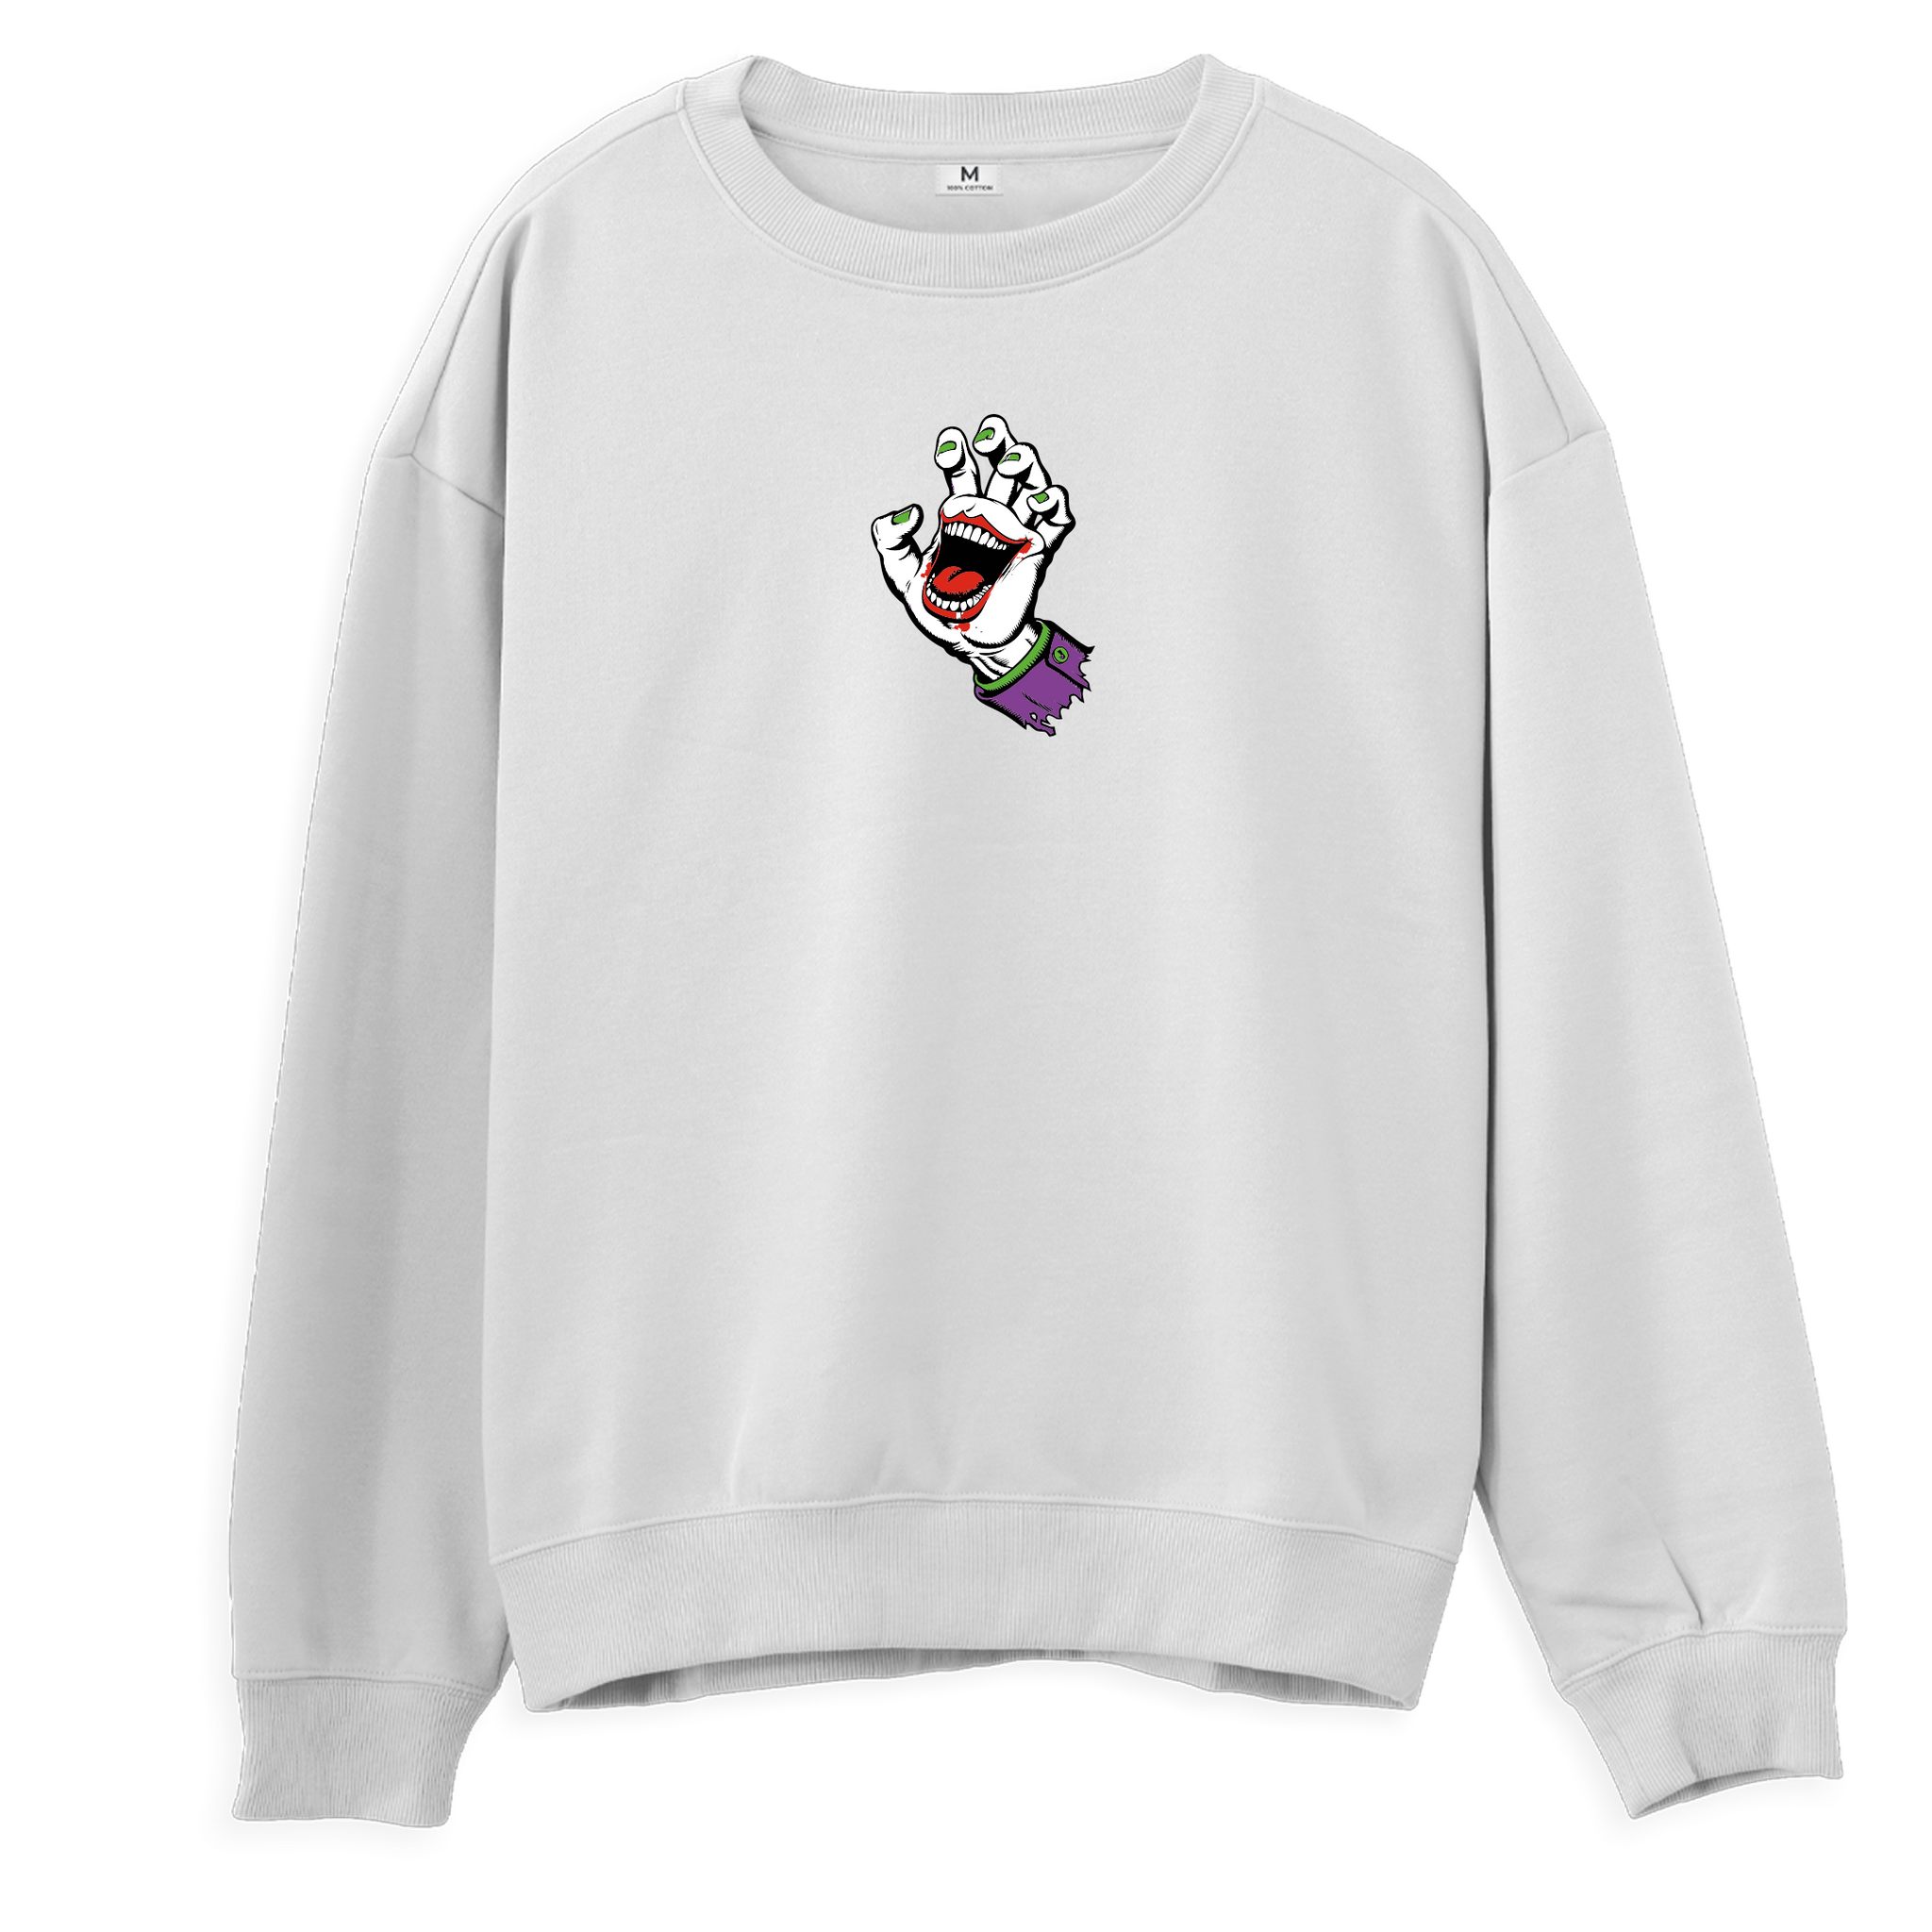 Joker - Sweatshirt